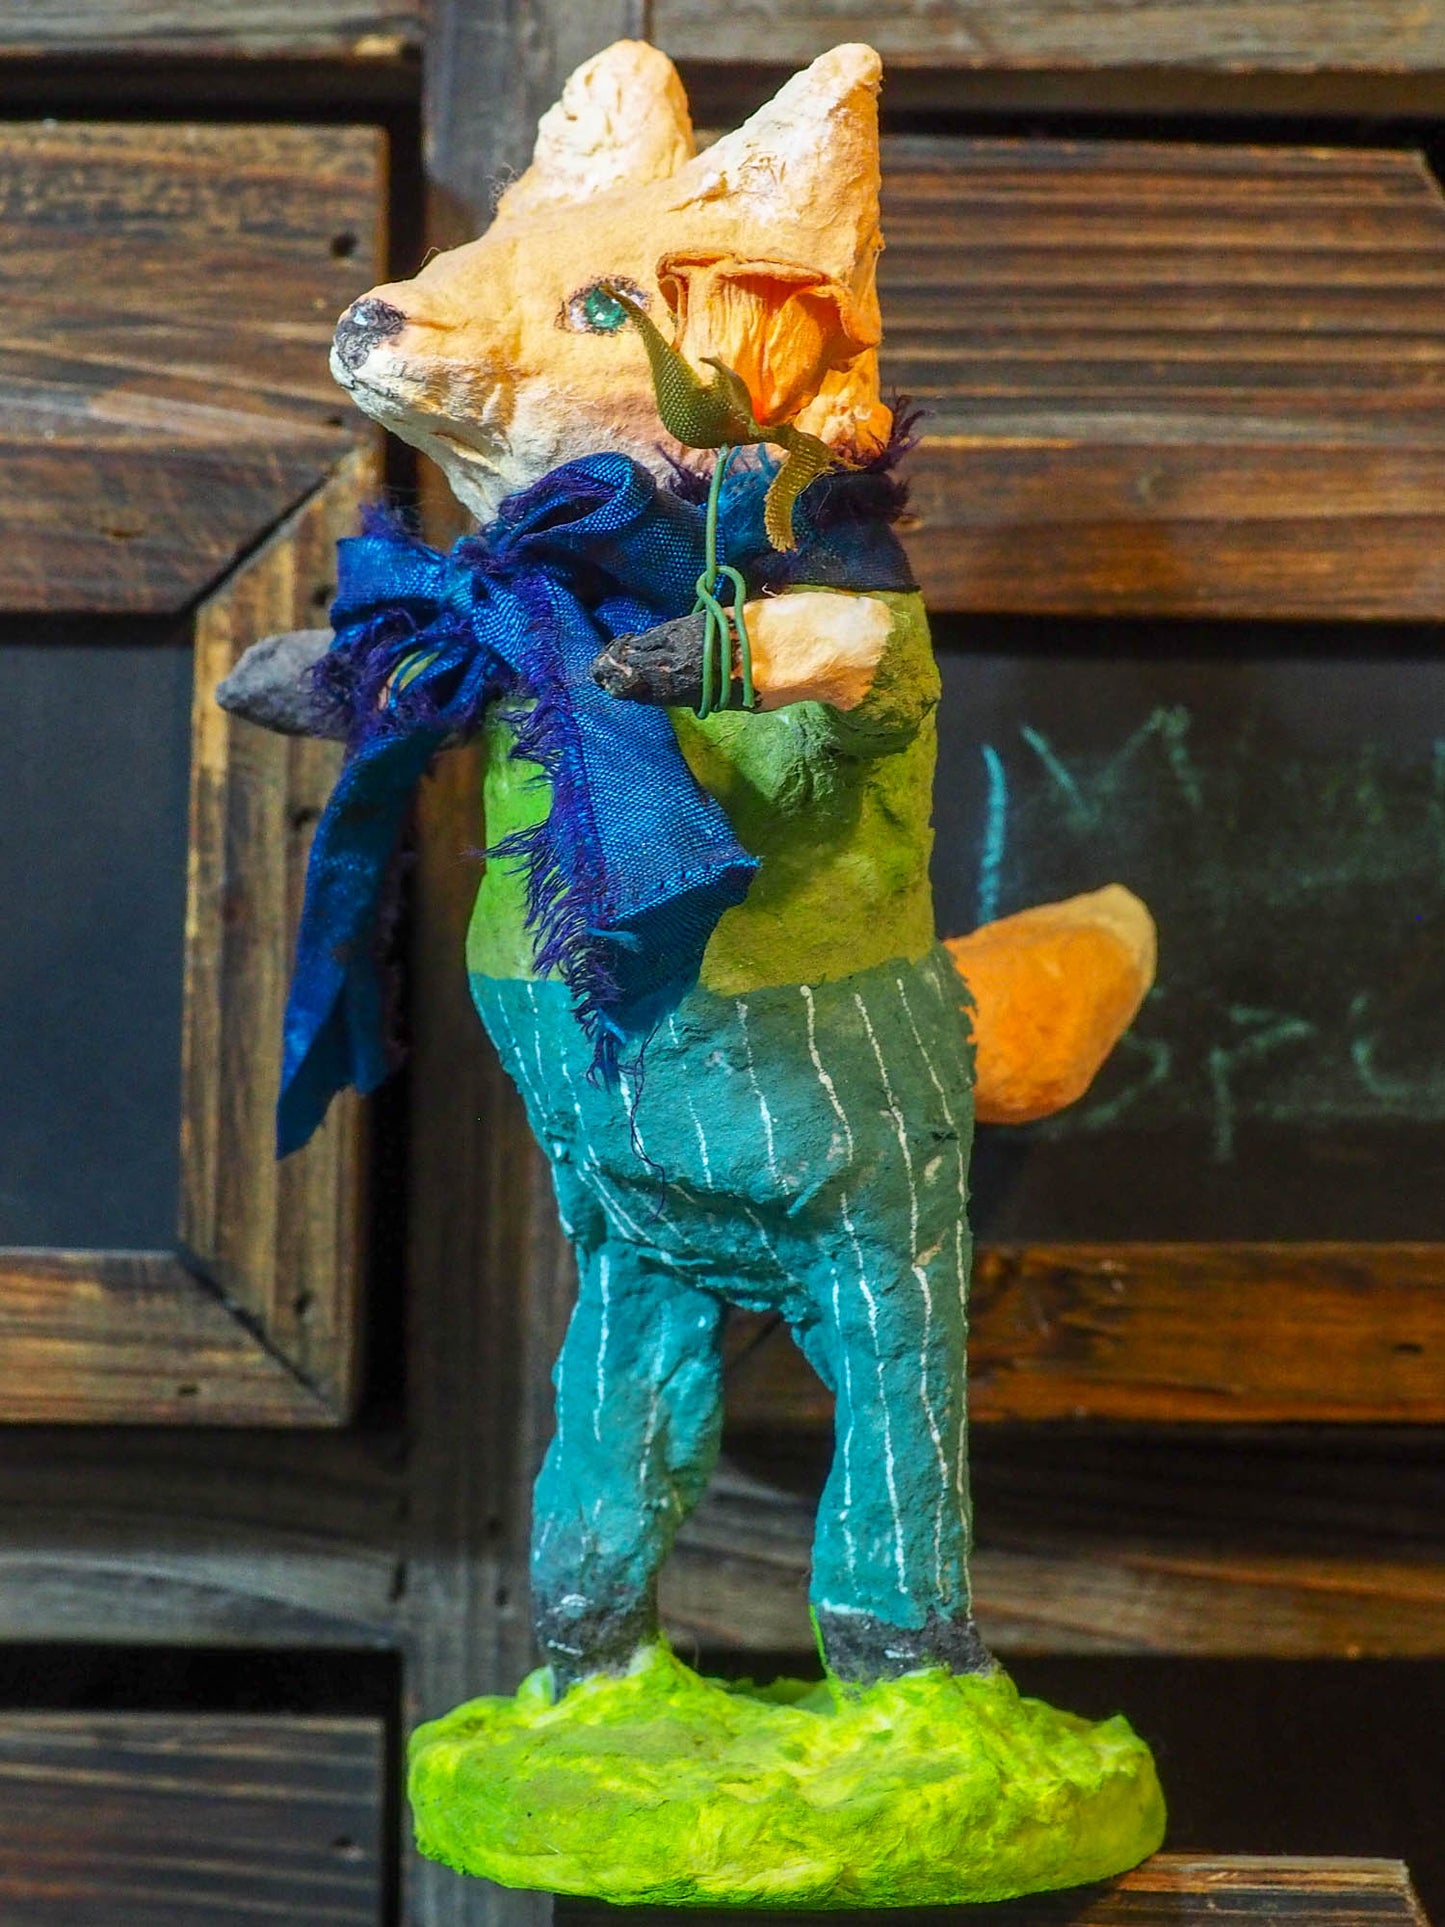 THE FLOWER FOX - An original mixed media spun cotton sculpture by Danita Art